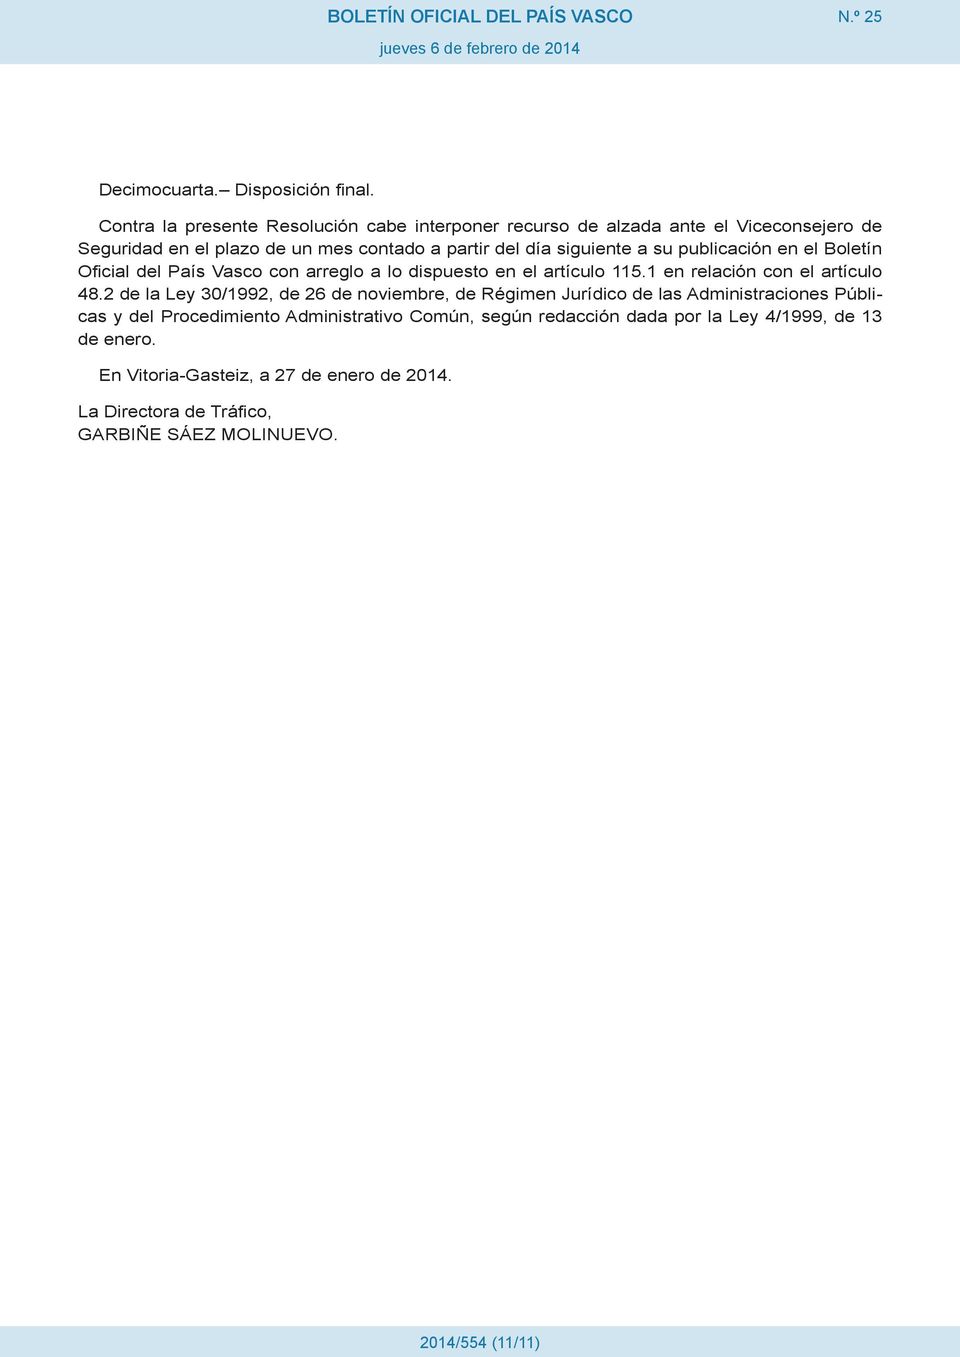 a su publicación en el Boletín Oficial del País Vasco con arreglo a lo dispuesto en el artículo 115.1 en relación con el artículo 48.